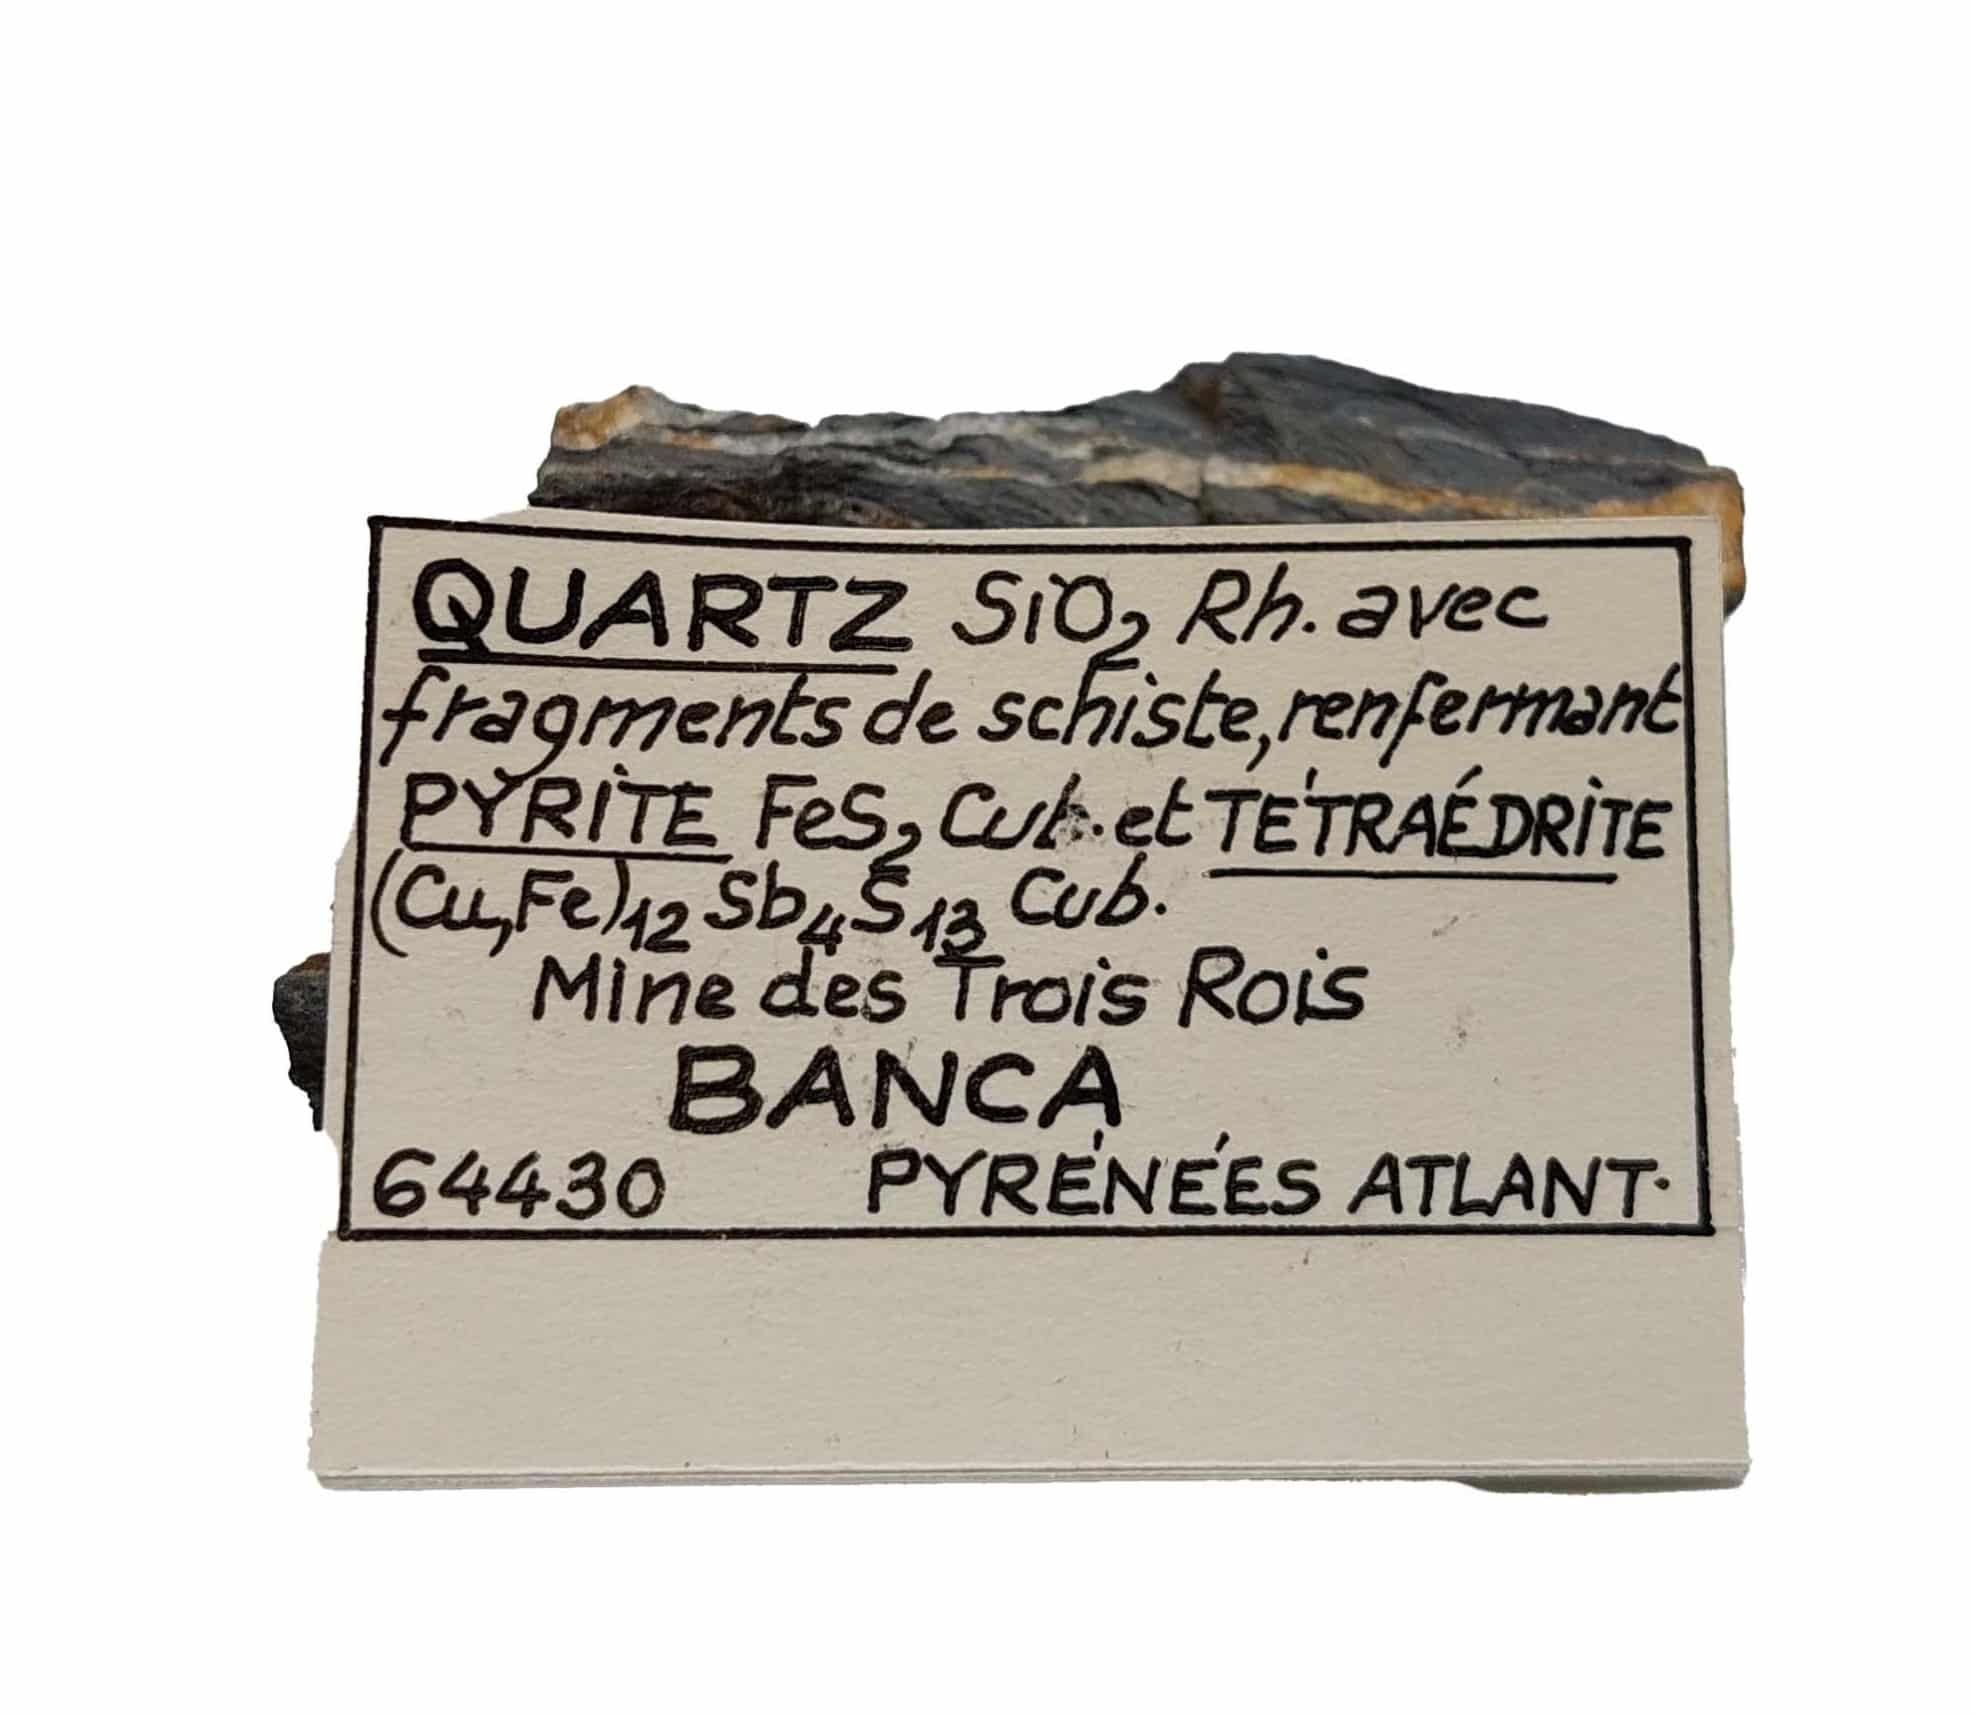 Quartz, Pyrite et Tétraédrite, Mine des Trois Rois, Banca, Pyrénées-Atlantiques.